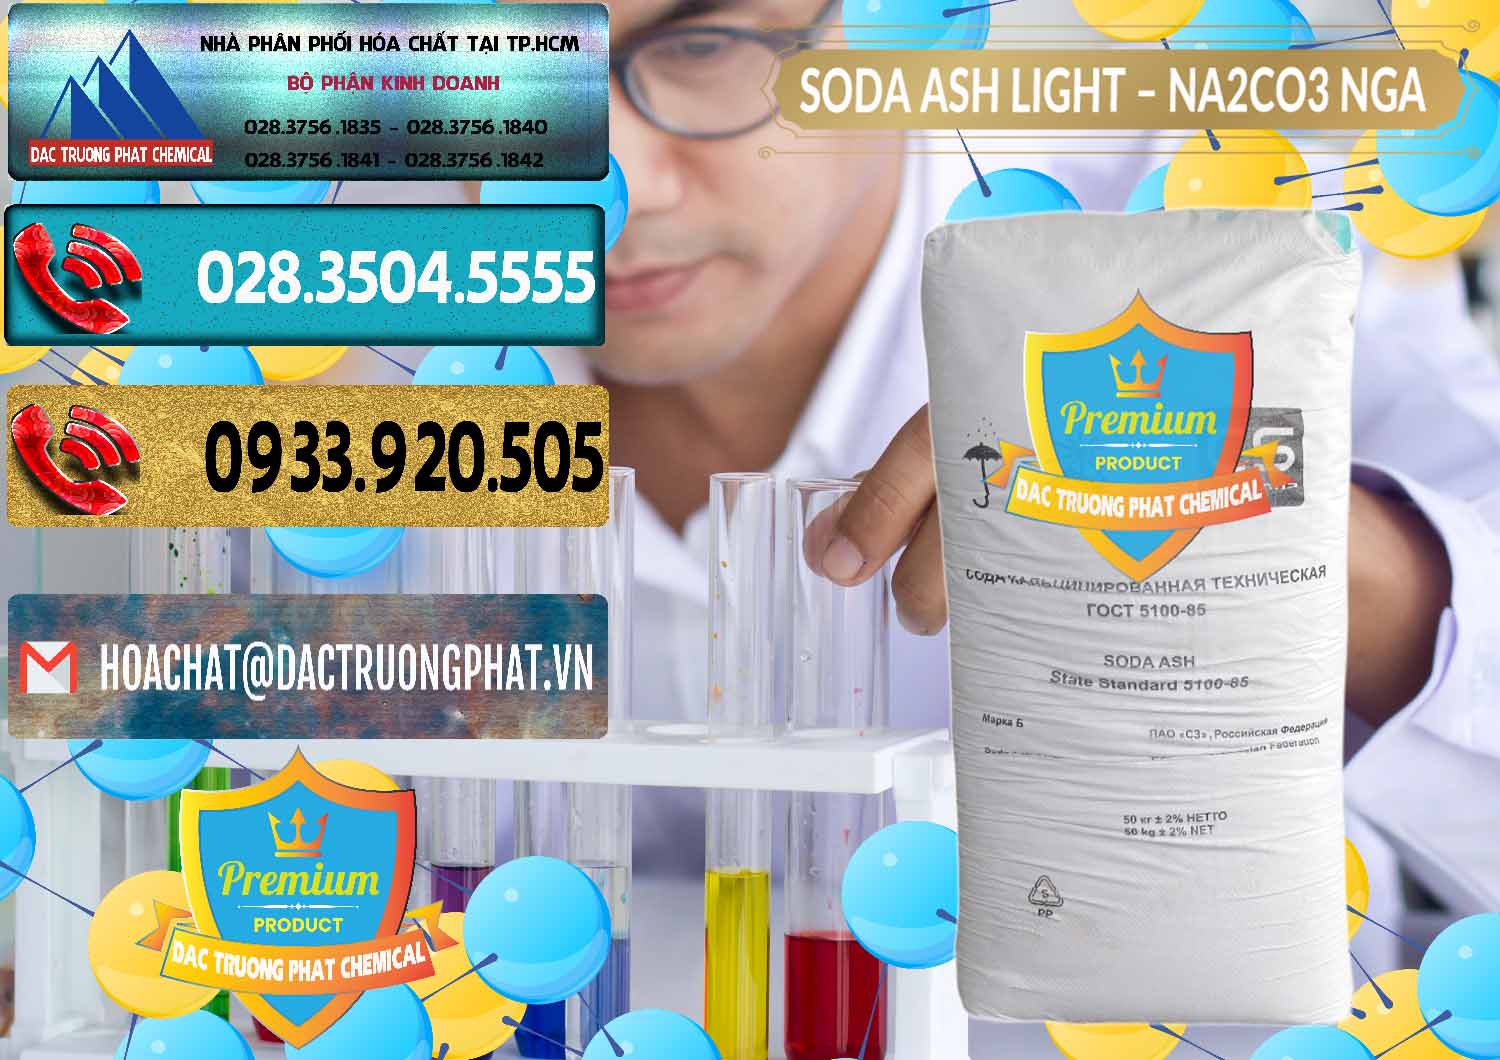 Nơi chuyên bán _ cung cấp Soda Ash Light - NA2CO3 Nga Russia - 0128 - Cty cung cấp - phân phối hóa chất tại TP.HCM - hoachatdetnhuom.com